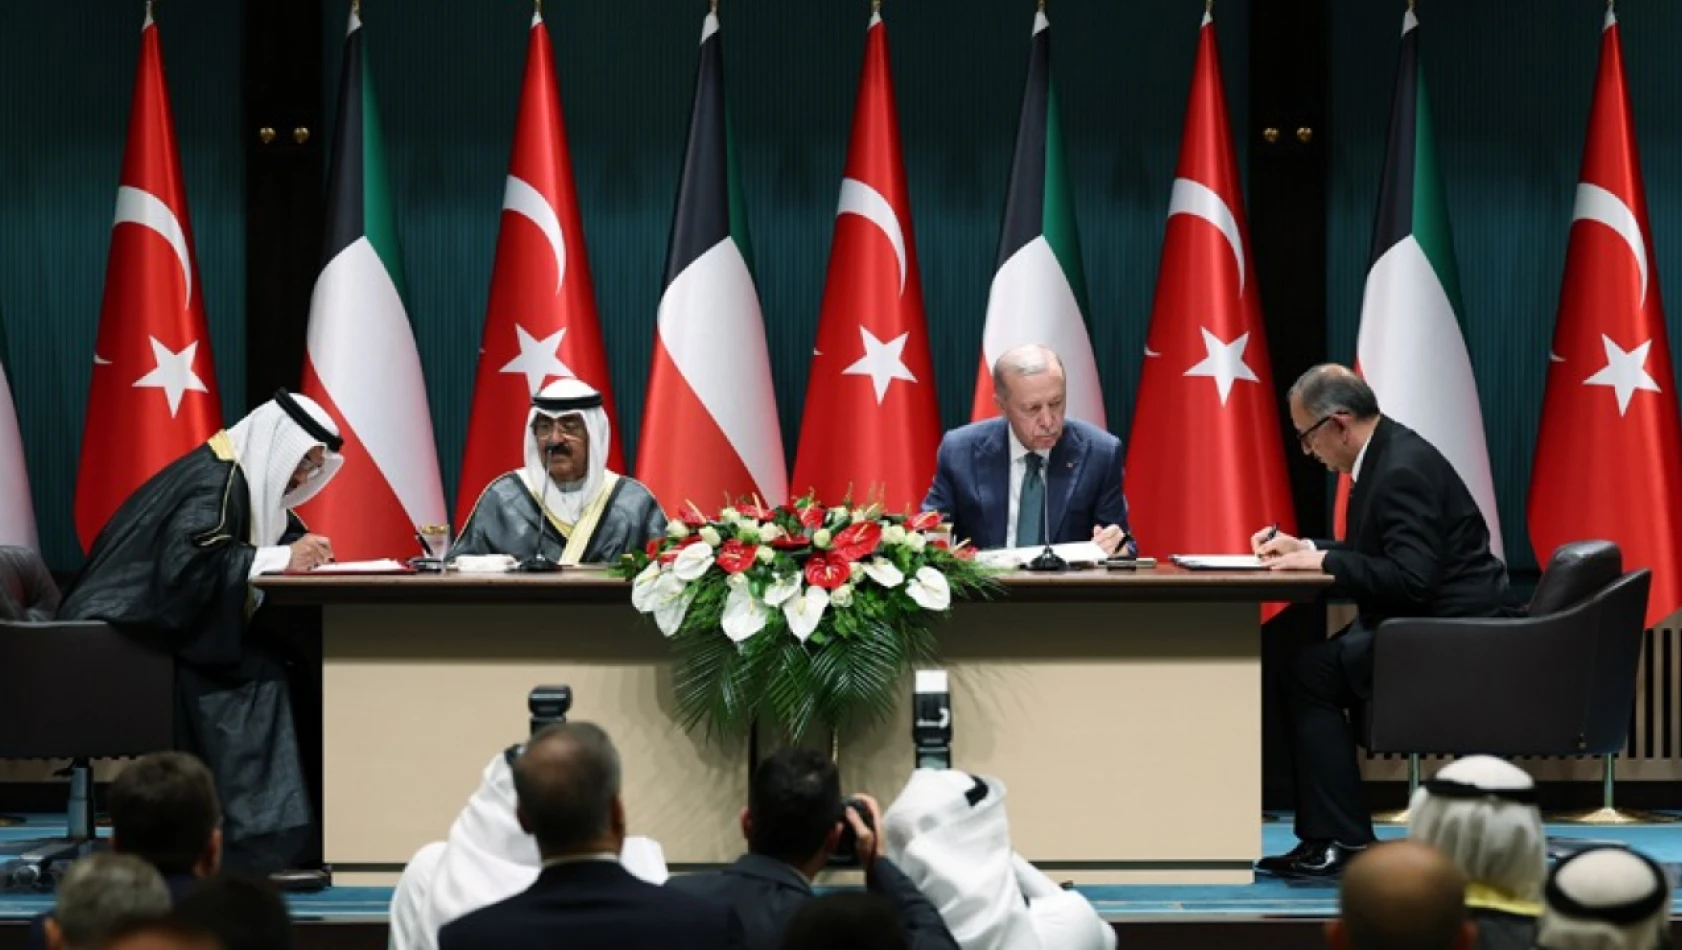 Kuveyt Emiri Arap dünyası dışında ilk resmi ziyaretini Türkiye'ye yaptı